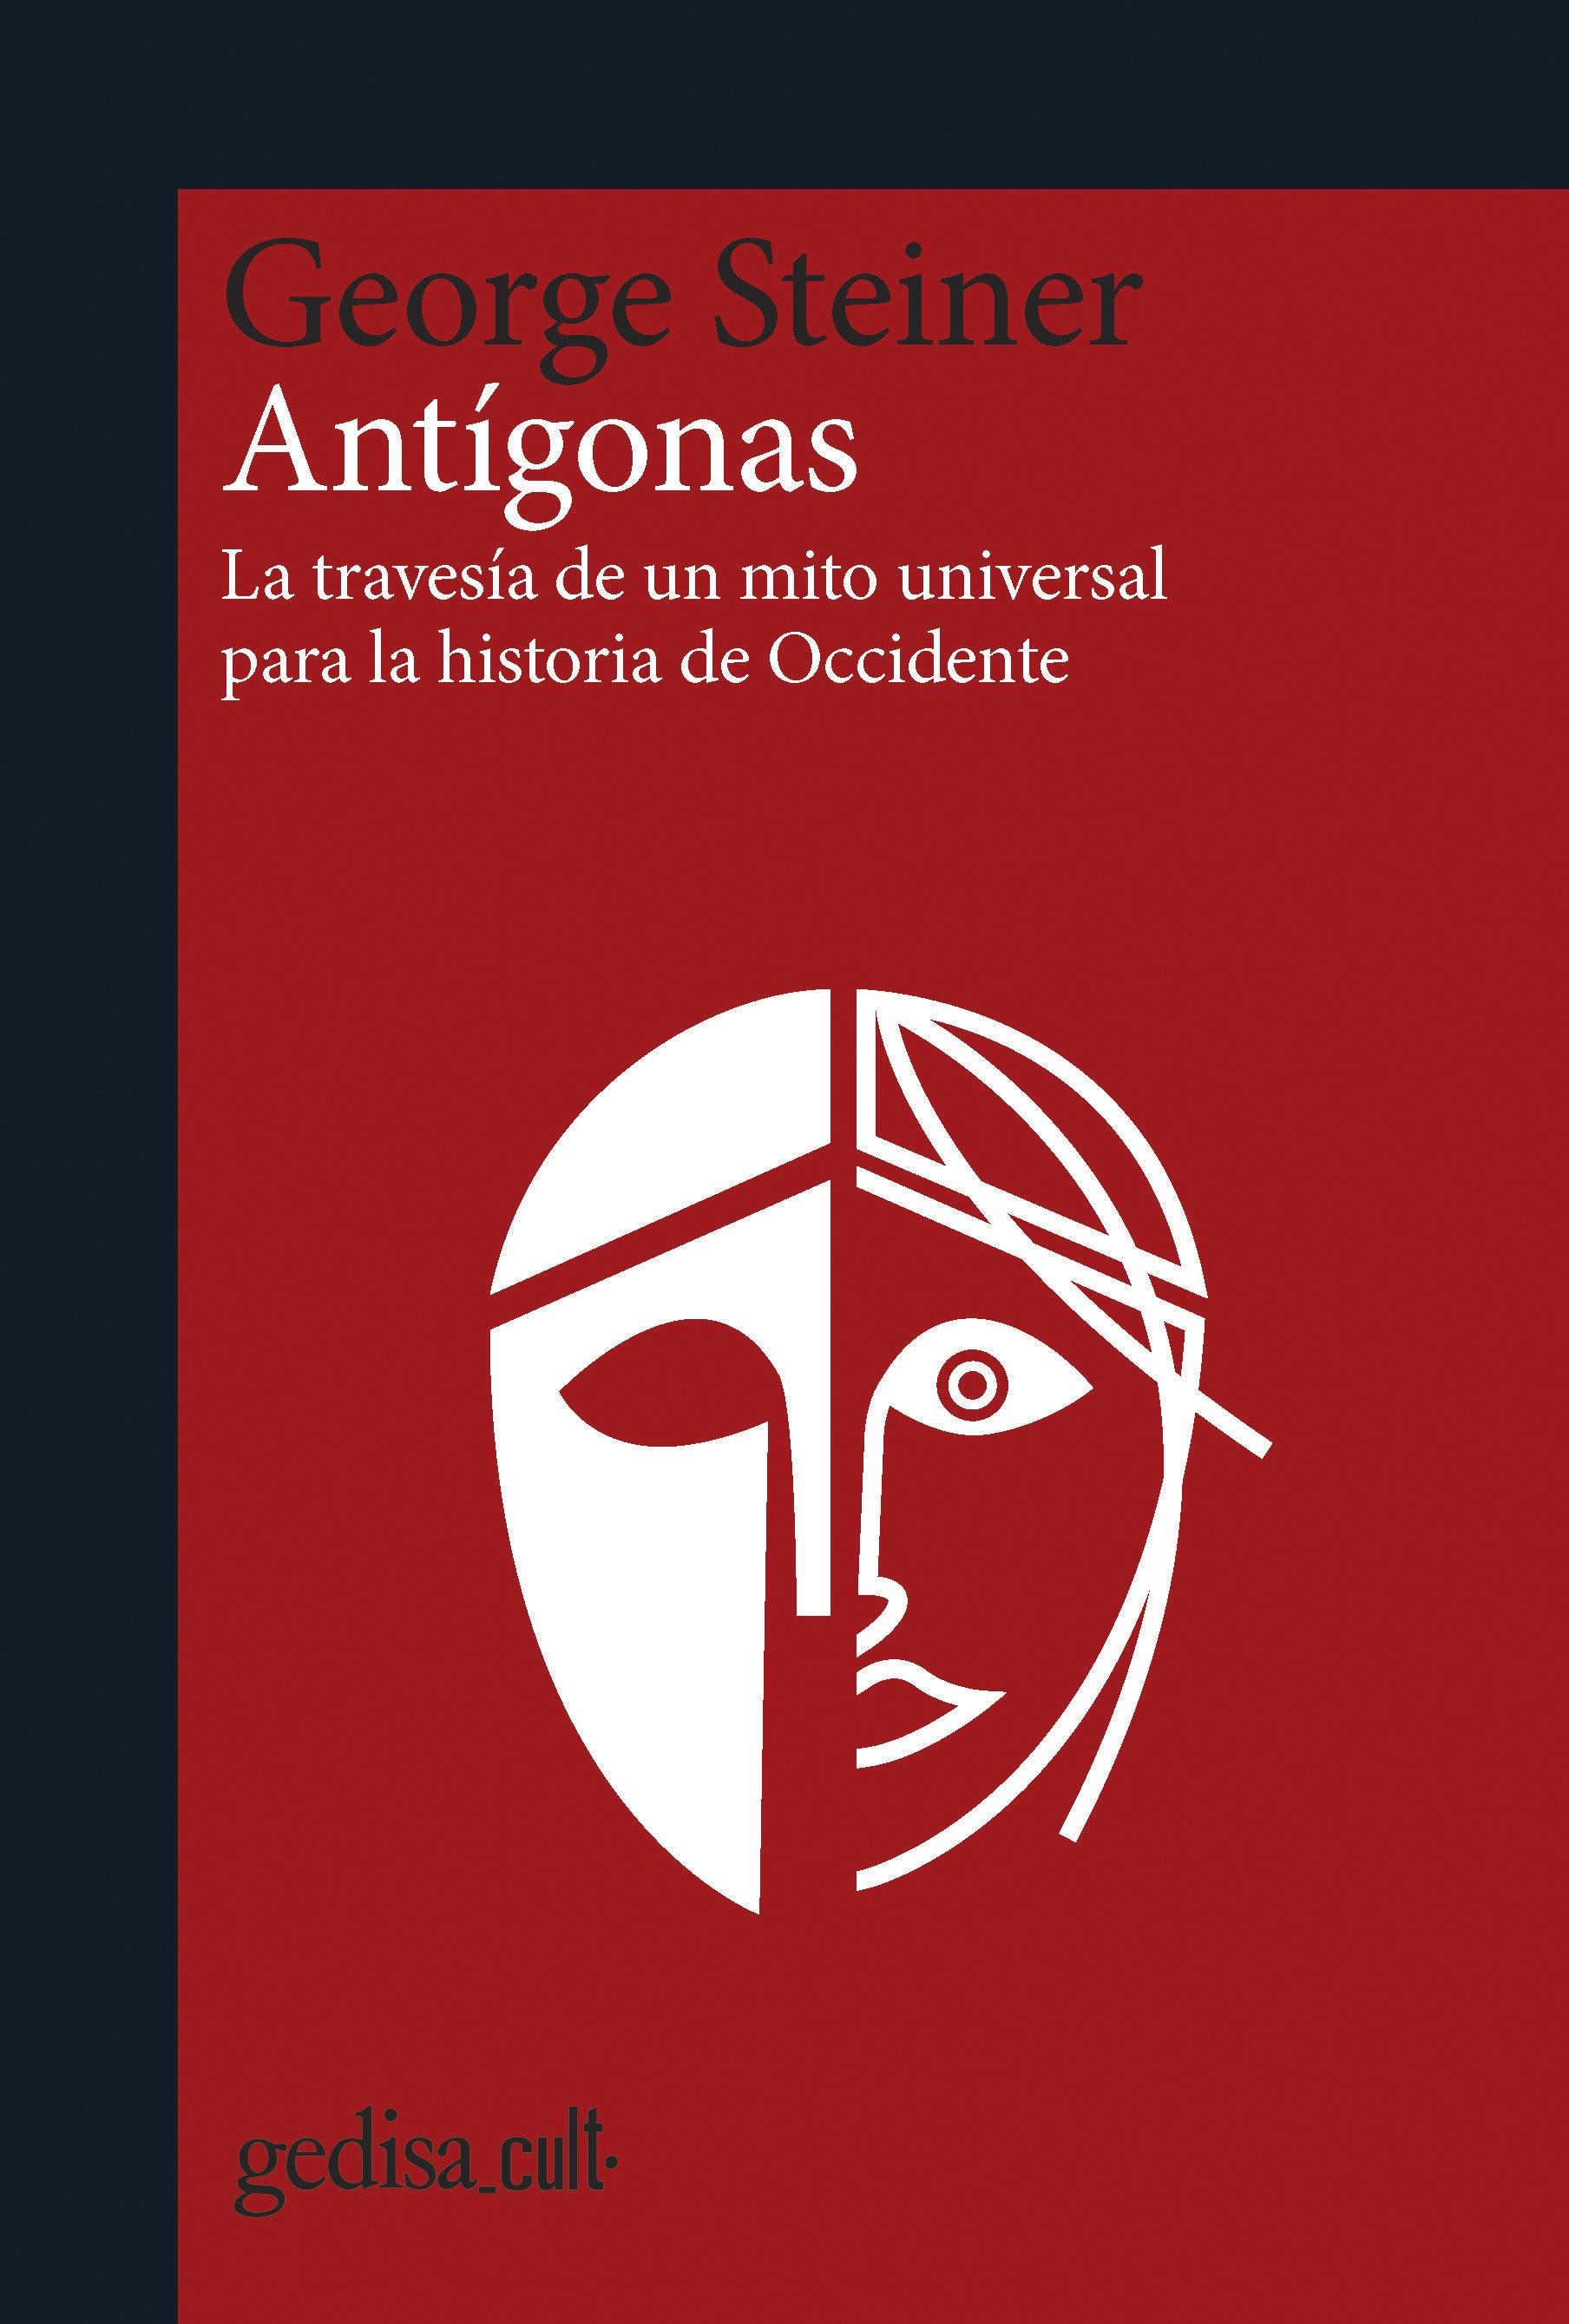 Antígonas "La travesía de un mito universal para la Historia". 